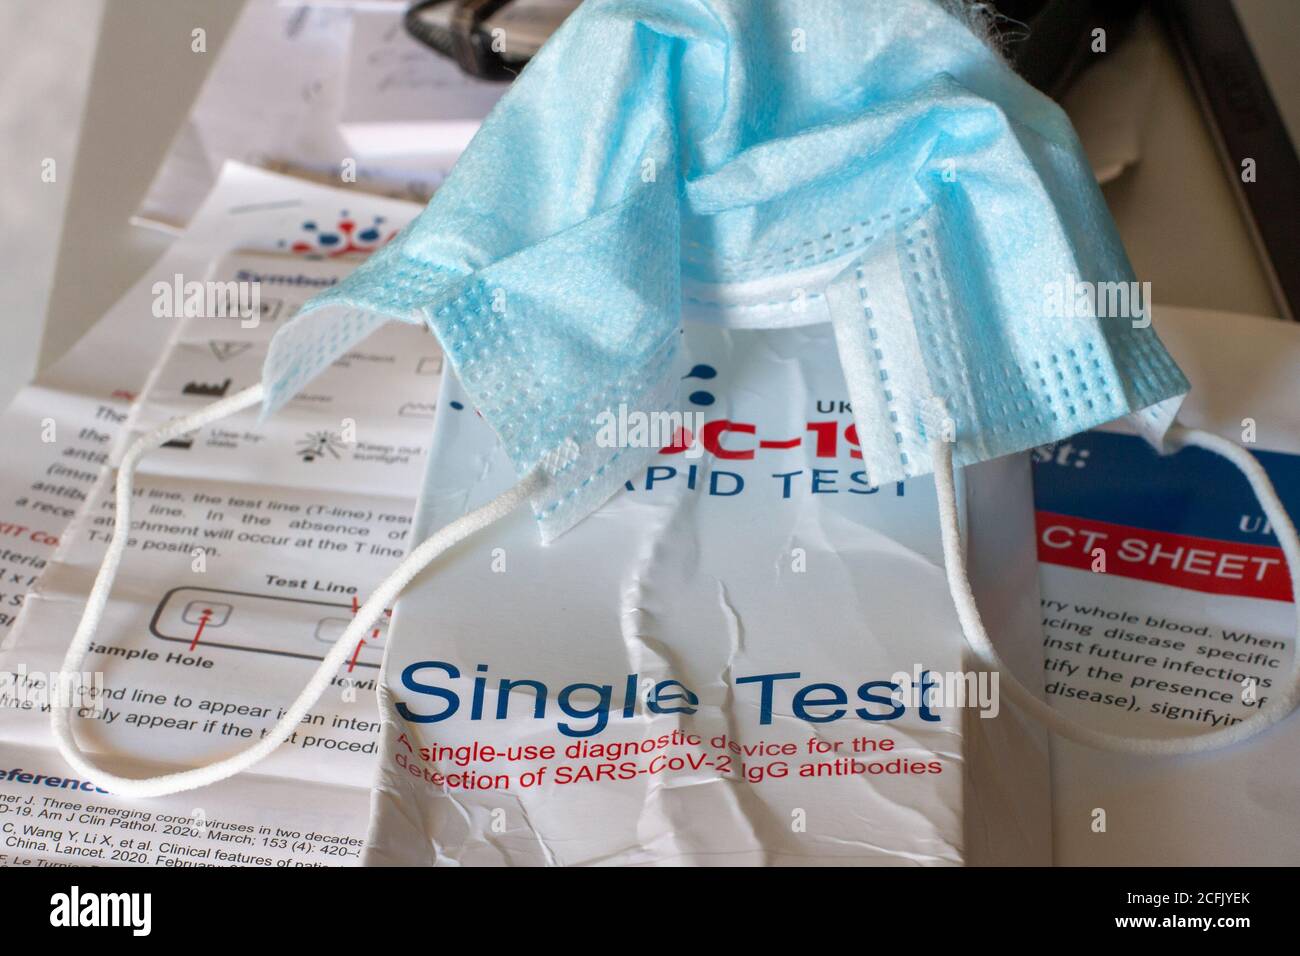 Bangor, Nordirland, Großbritannien, 6. September 2020: Verpackung eines gebrauchten Covid 19 Antikörpertestkits. Das Testkit ist ein Diagnosegerät zur einmaligen Verwendung für die Erkennung von os SARS-CoV-2 LGG Antikörpern Stockfoto